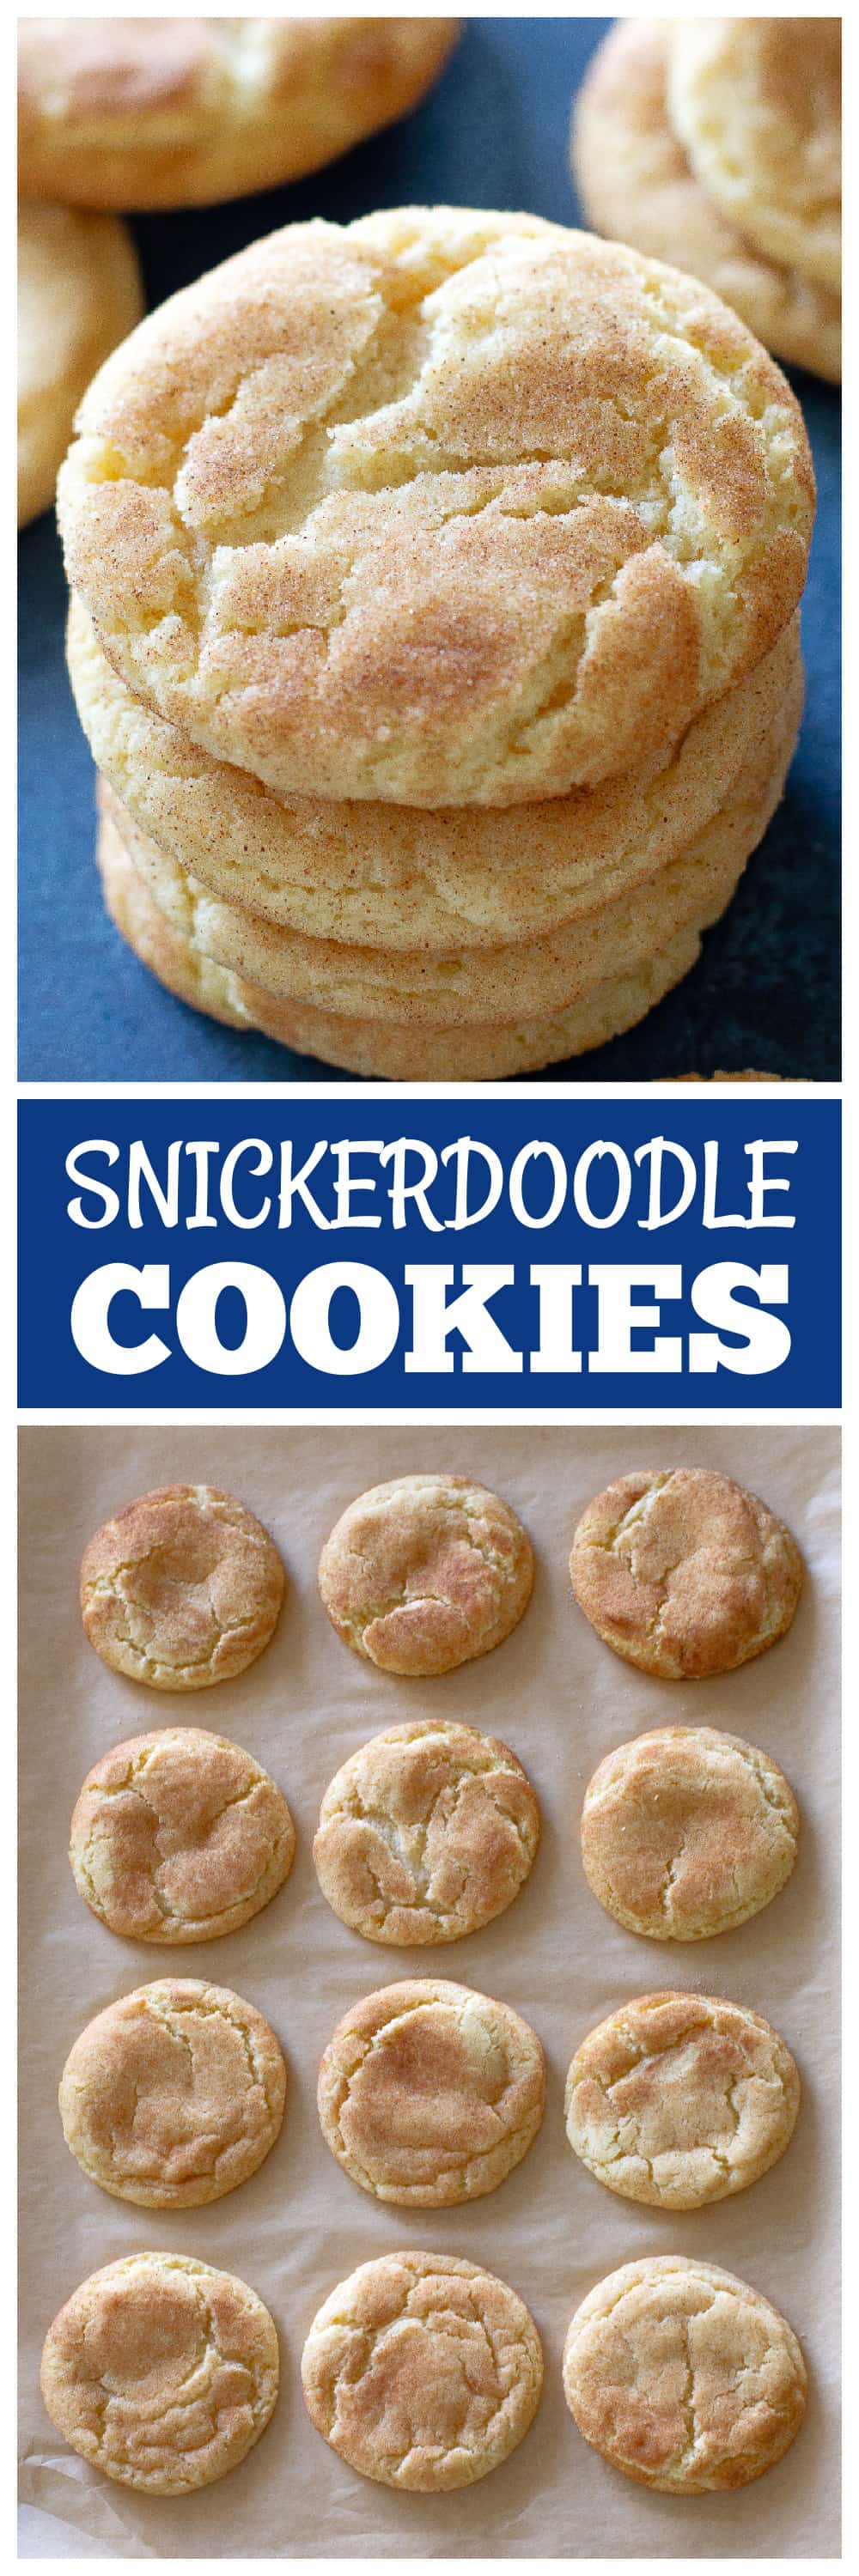 snickerdoodle cookies